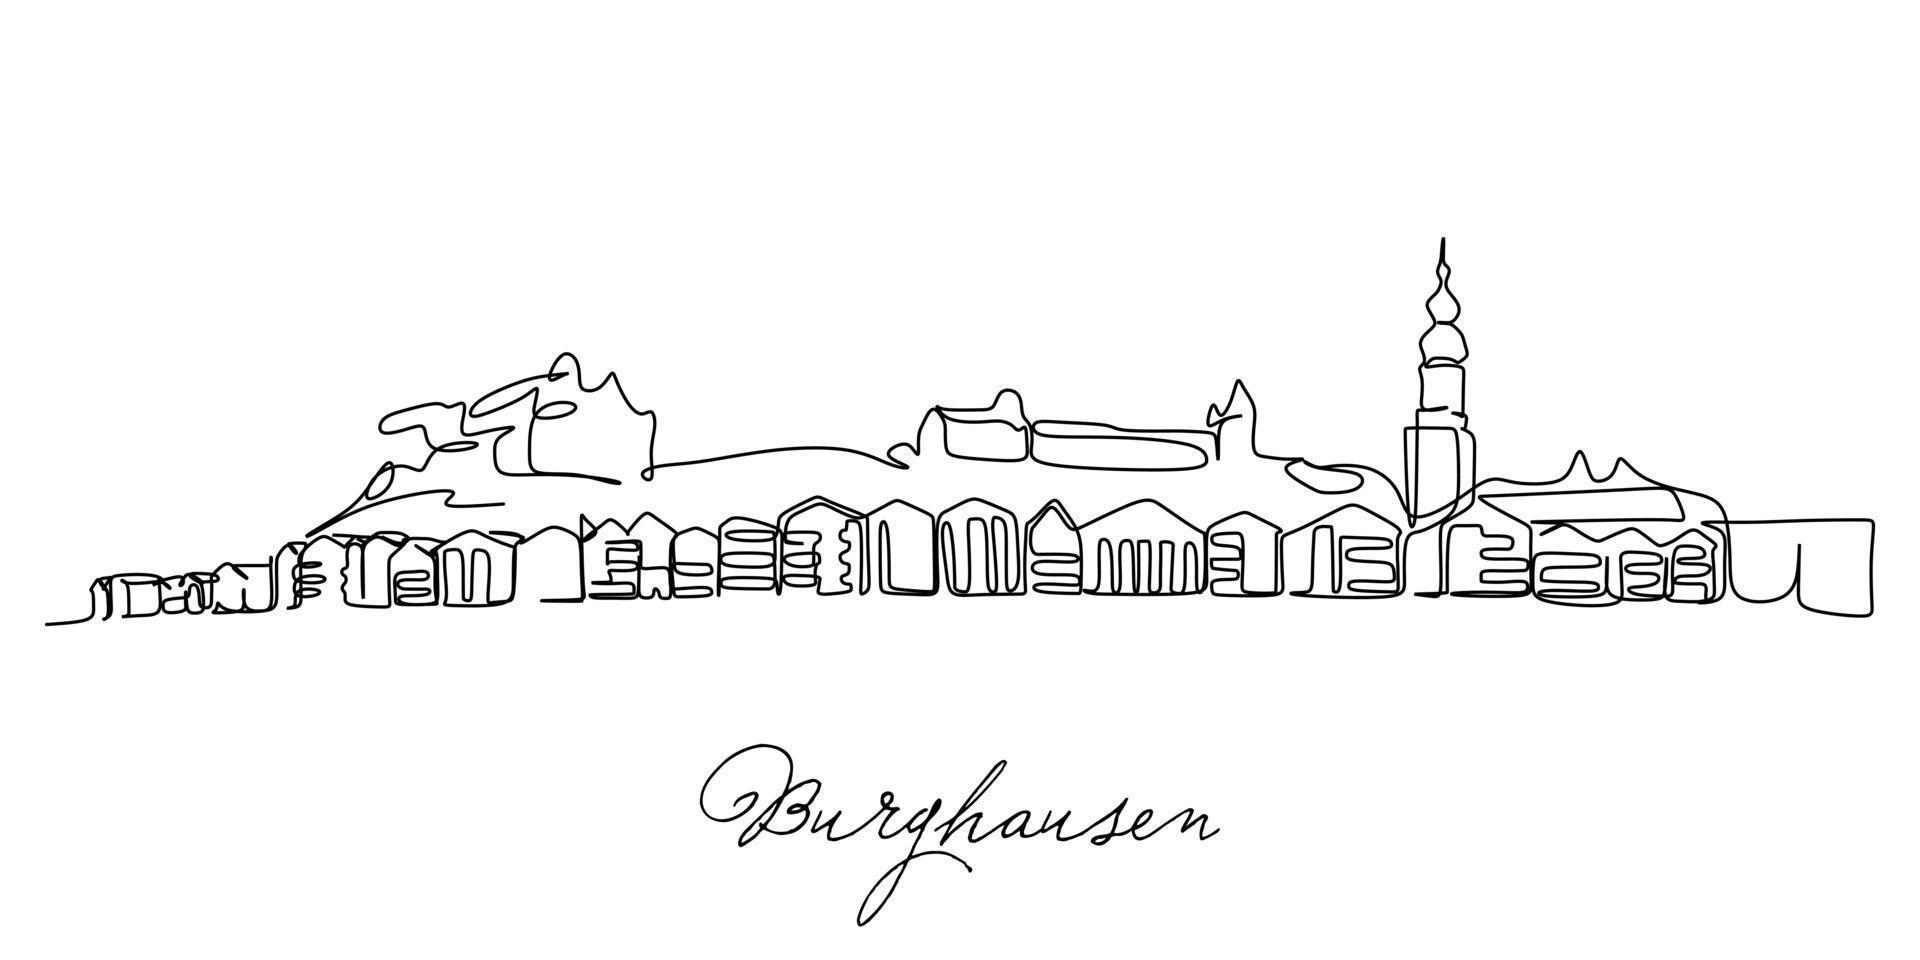 enda kontinuerlig linjeritning av staden Burghausen, Tyskland. berömda staden skyskrapa landskap. världsresor hem vägg dekor konst affisch print koncept. moderna en rad rita design vektorillustration vektor